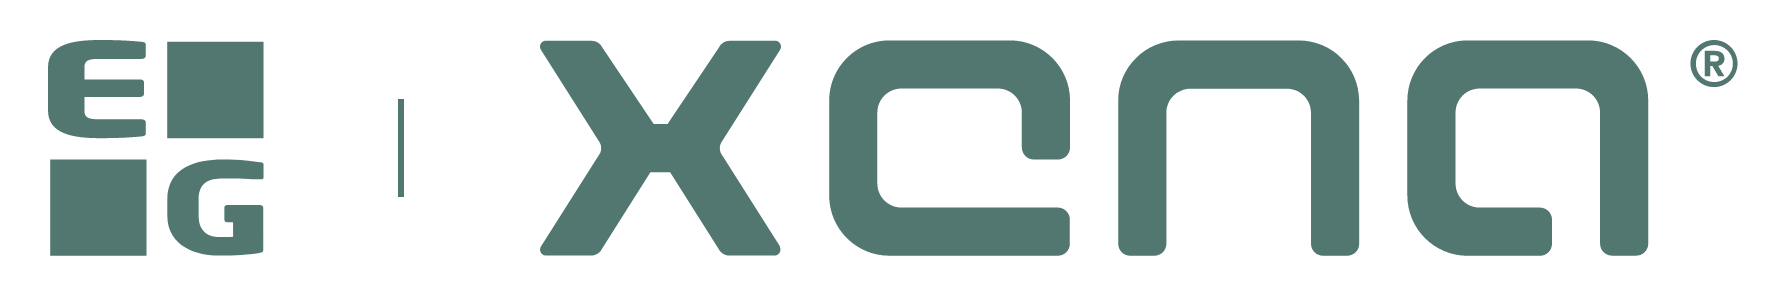 Logoet EG Xena med grøn tekst